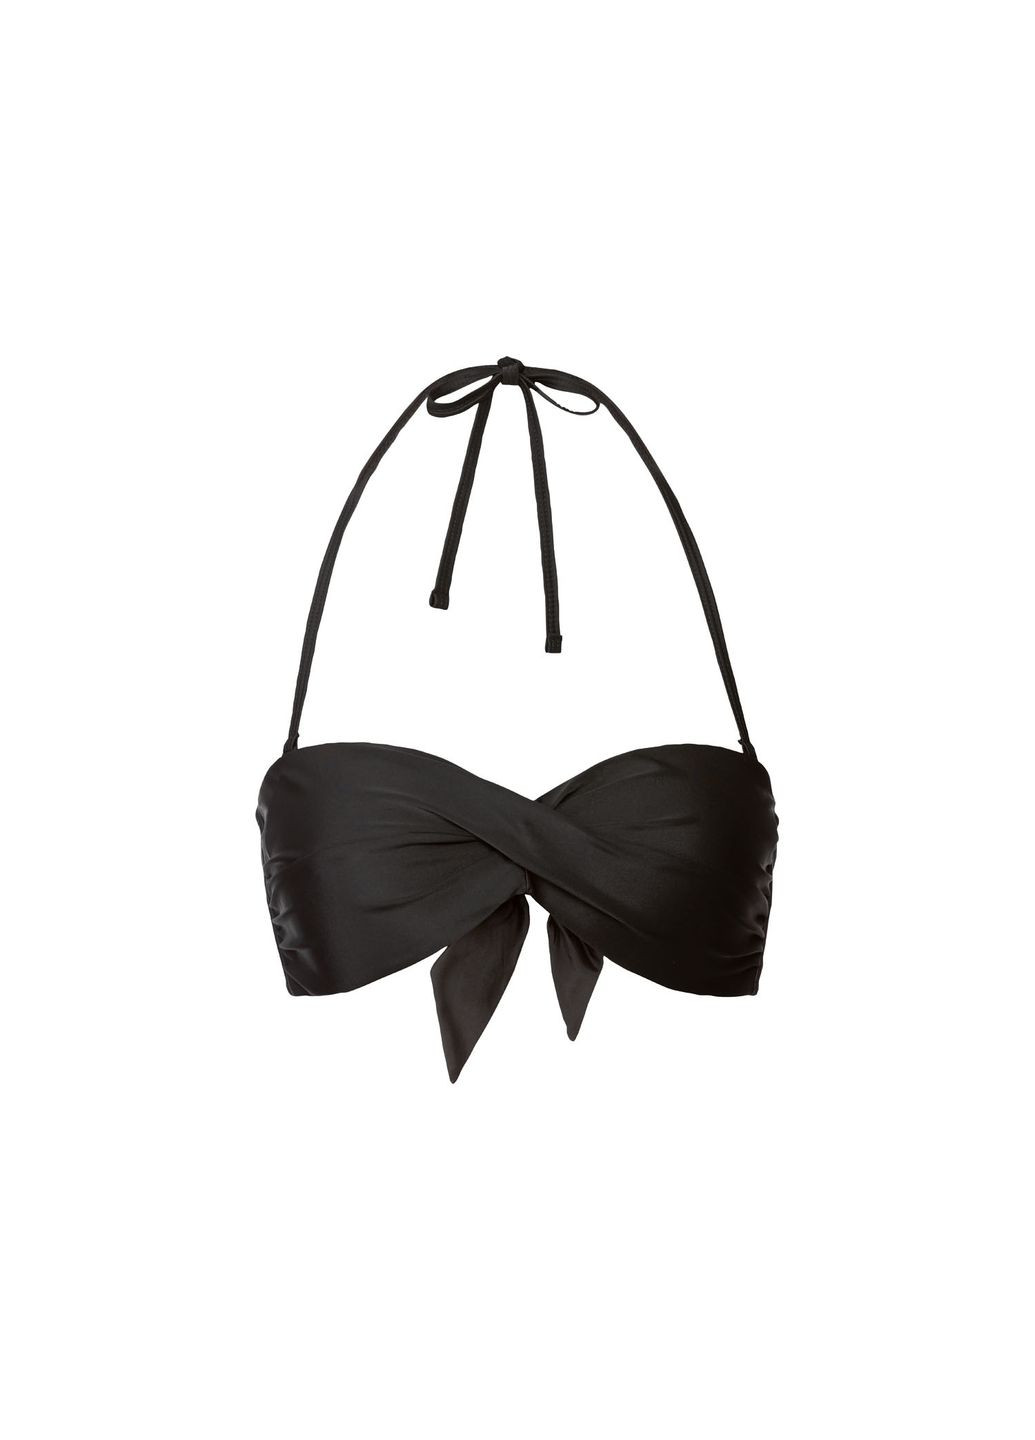 Черный купальник раздельный на подкладке для женщины lycra® 372167-1 бикини Esmara С открытой спиной, С открытыми плечами